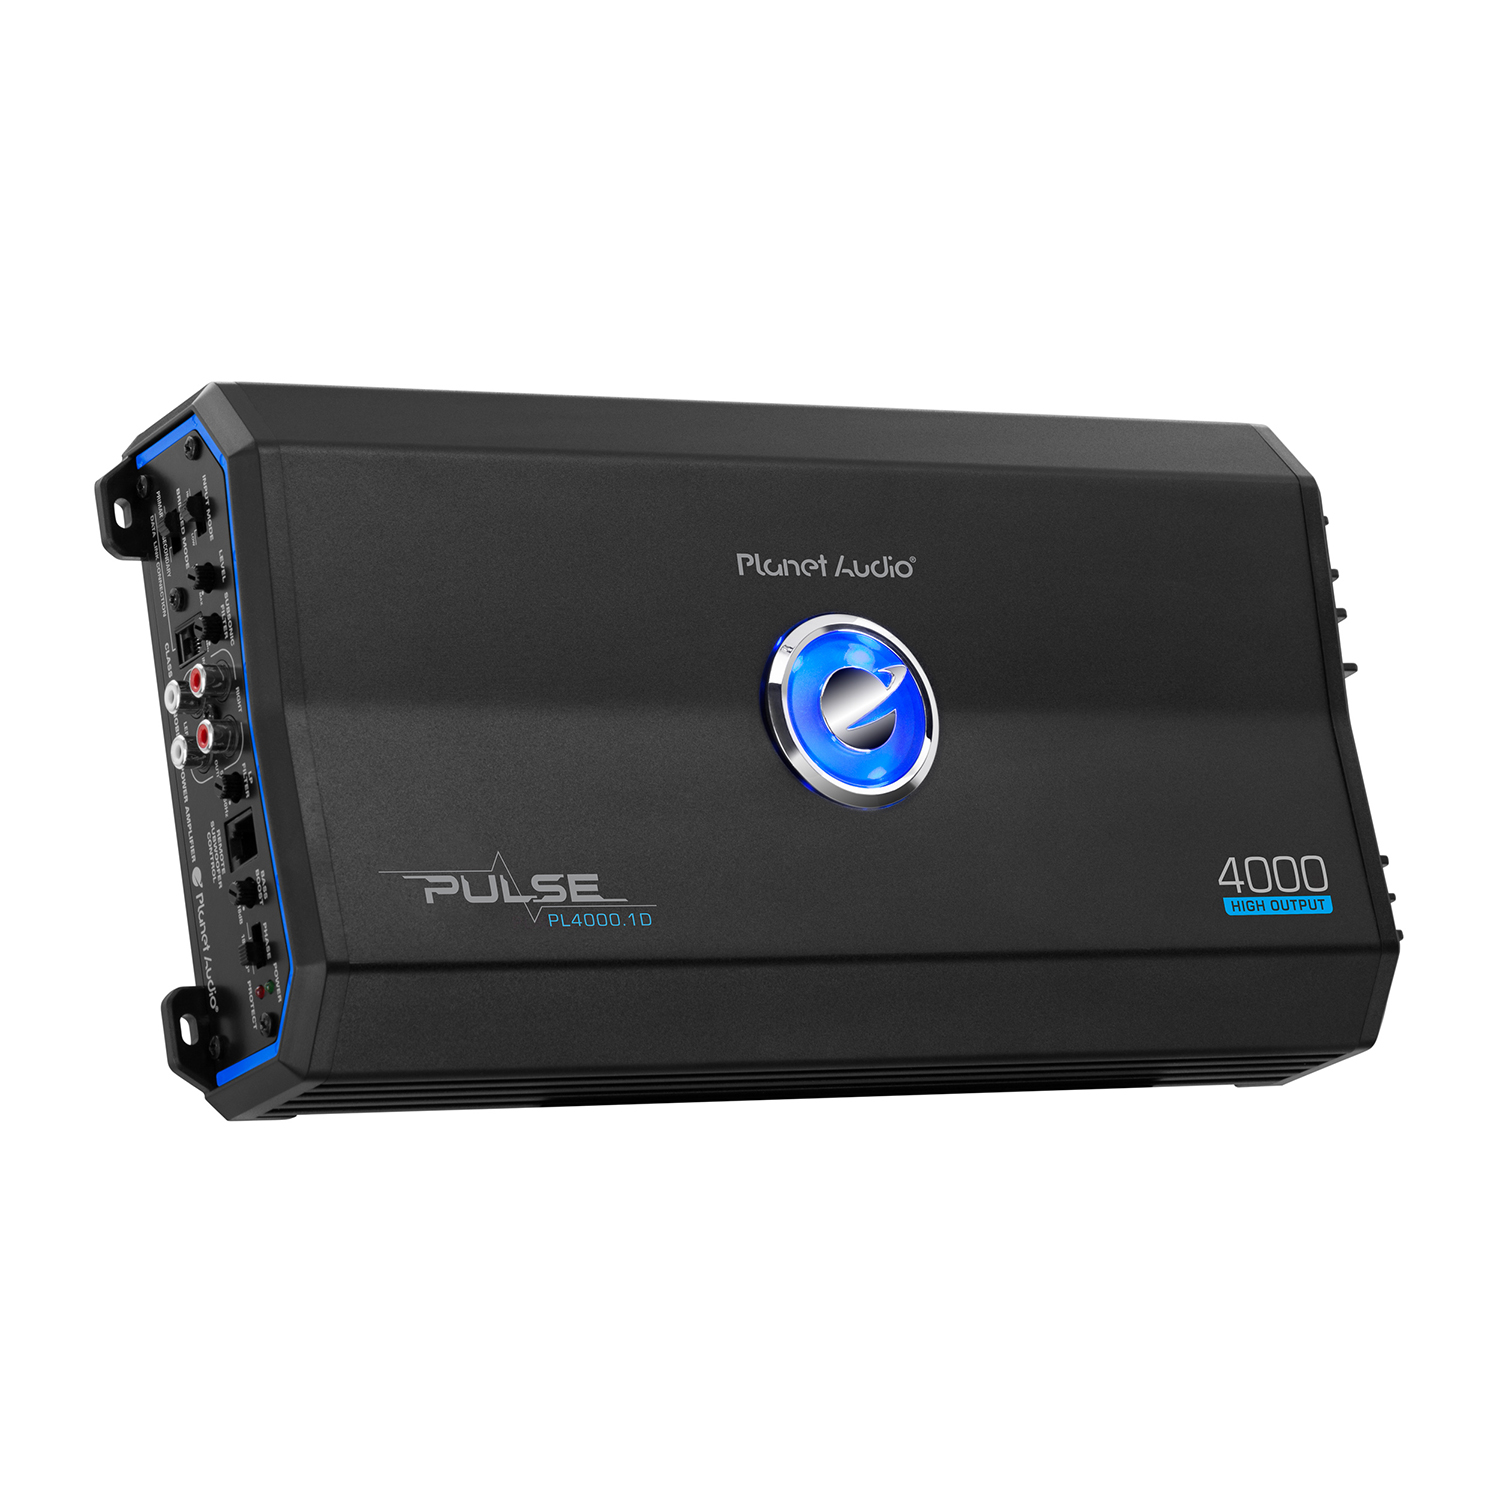 1 2250 W RMS Planet Audio Pulse PL3000.1D Car Amplifier 3000 W PMPO